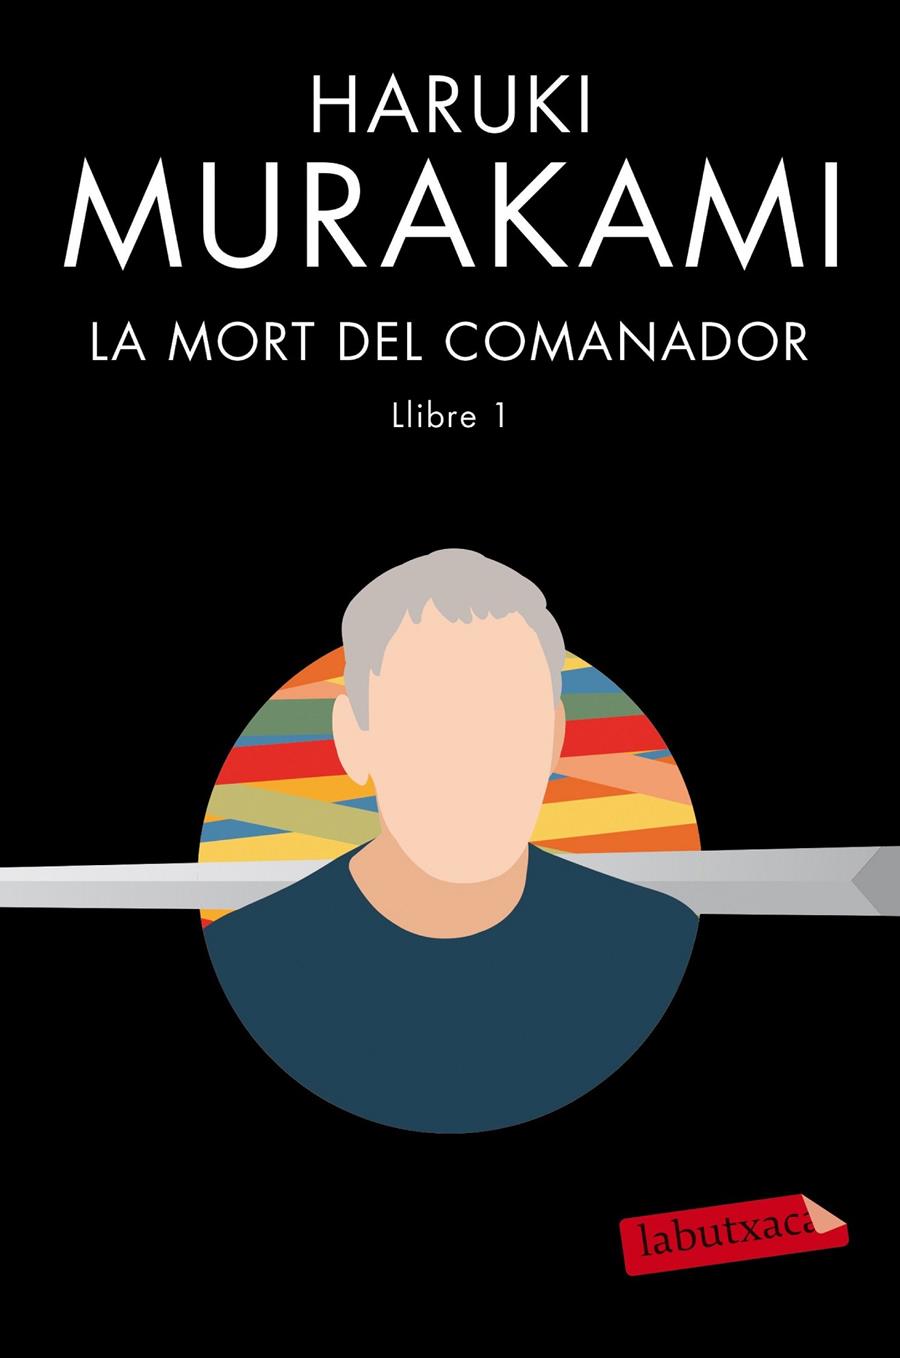 La mort del comanador 1 | Murakami, Haruki | Cooperativa autogestionària